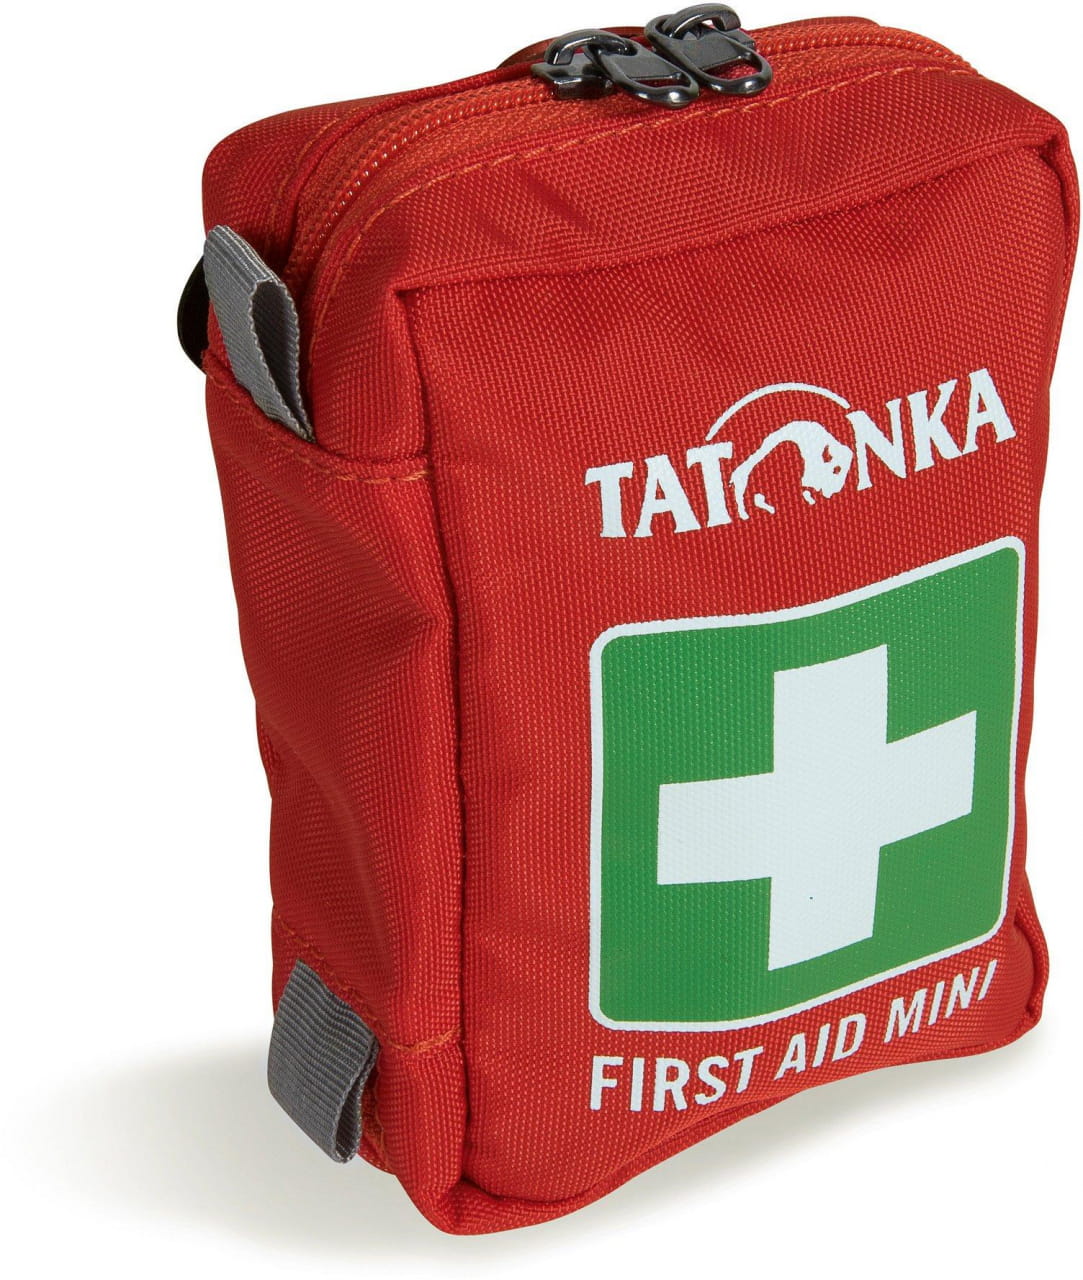 Reiseapotheke Tatonka First Aid Mini